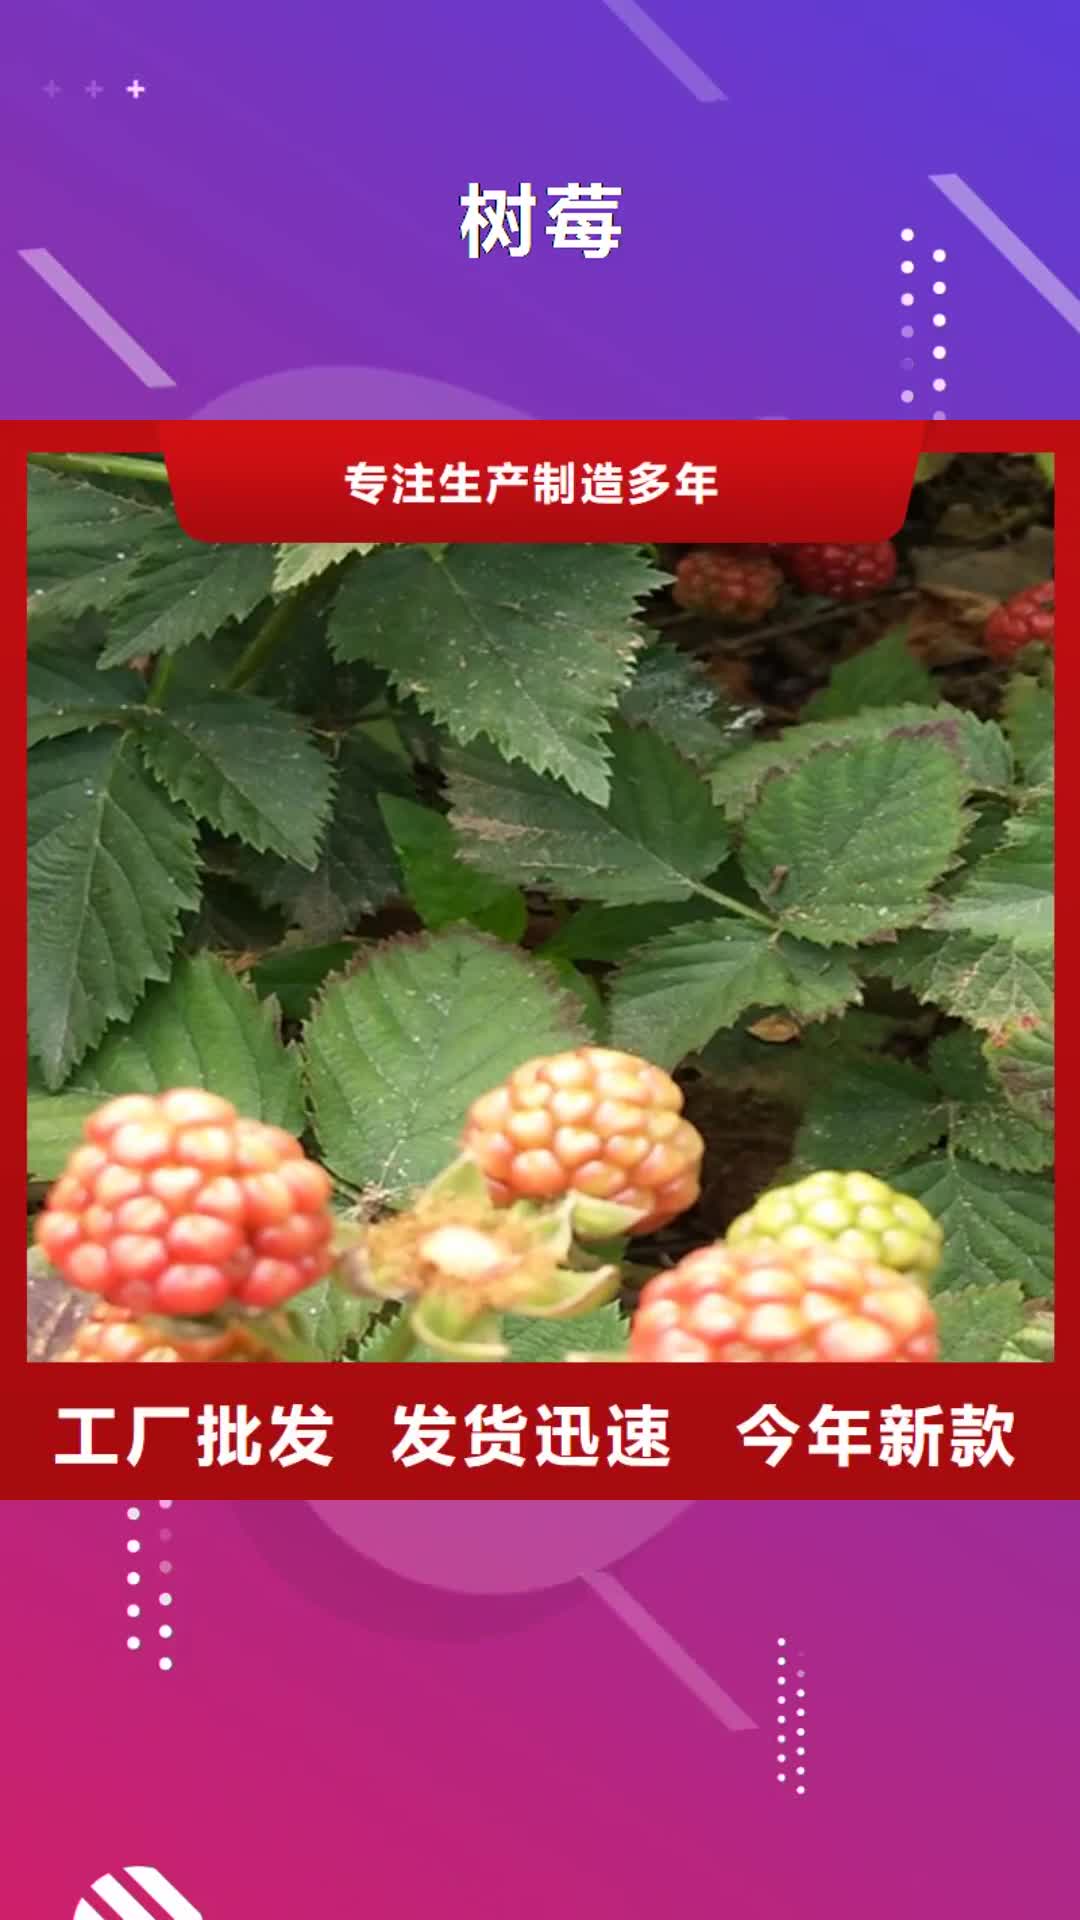 【林芝 树莓-桃树苗厂家拥有先进的设备】